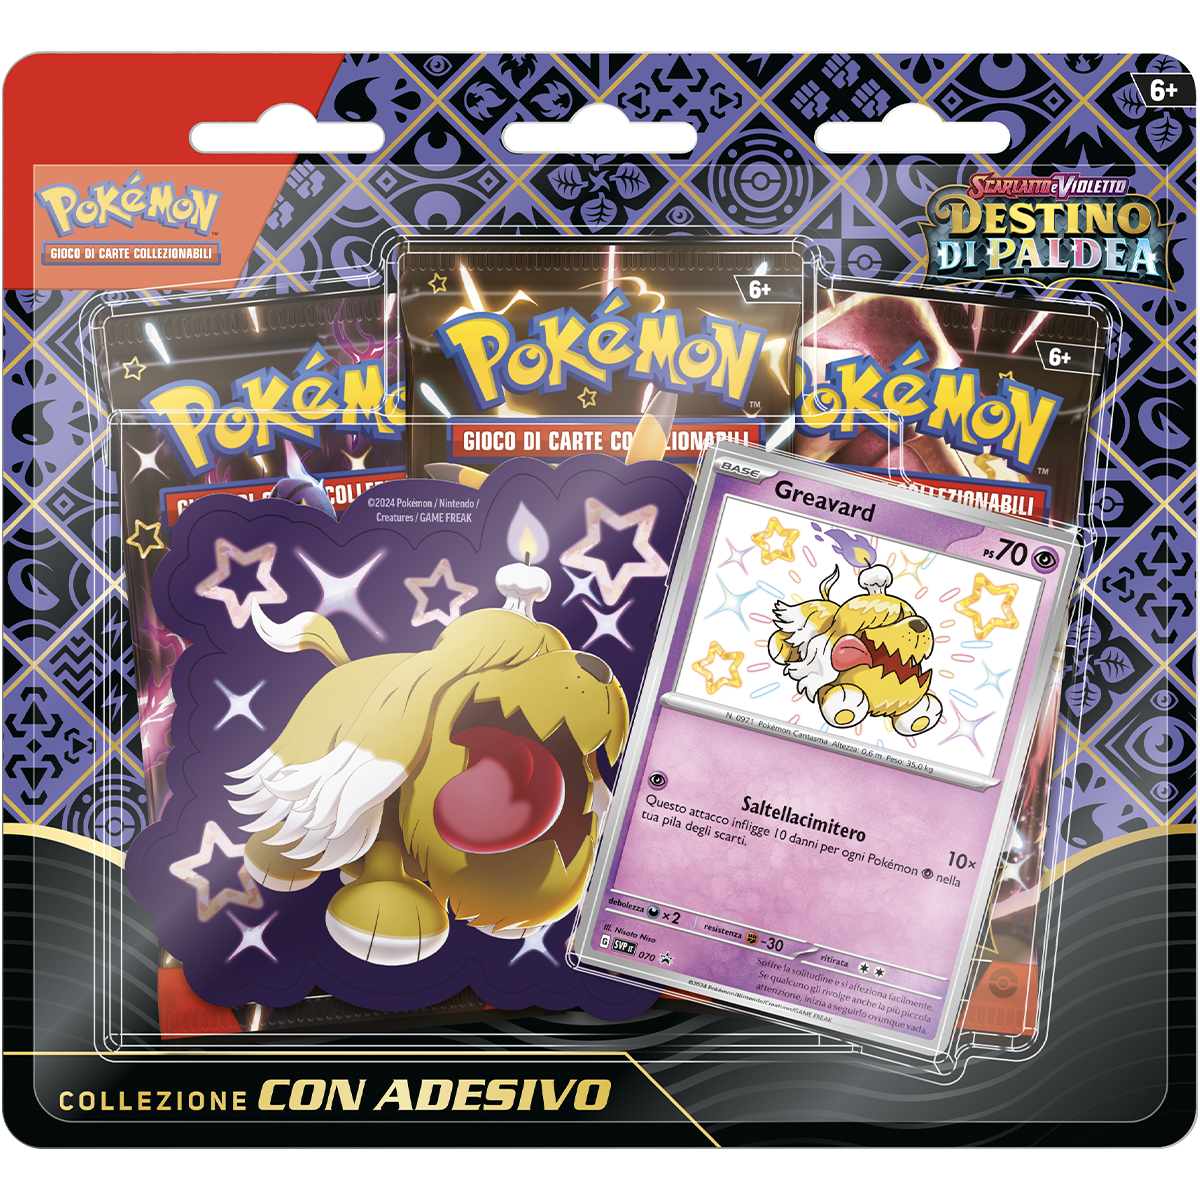 Pokémon destino di paldea collezione con adesivo - POKEMON